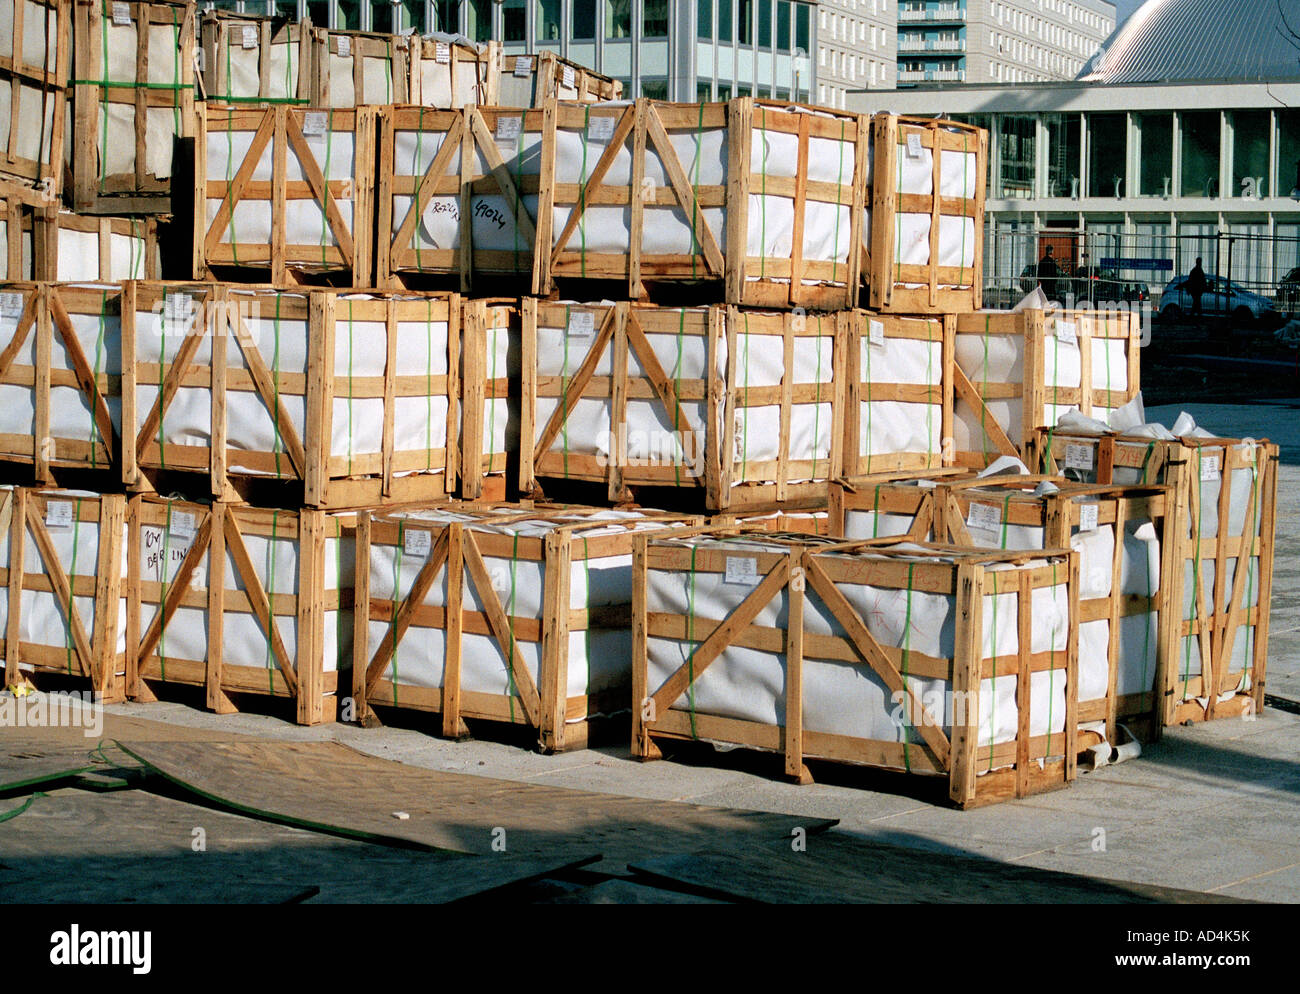 Stapel von Holzkisten auf eine kommerzielle dock Stockfoto